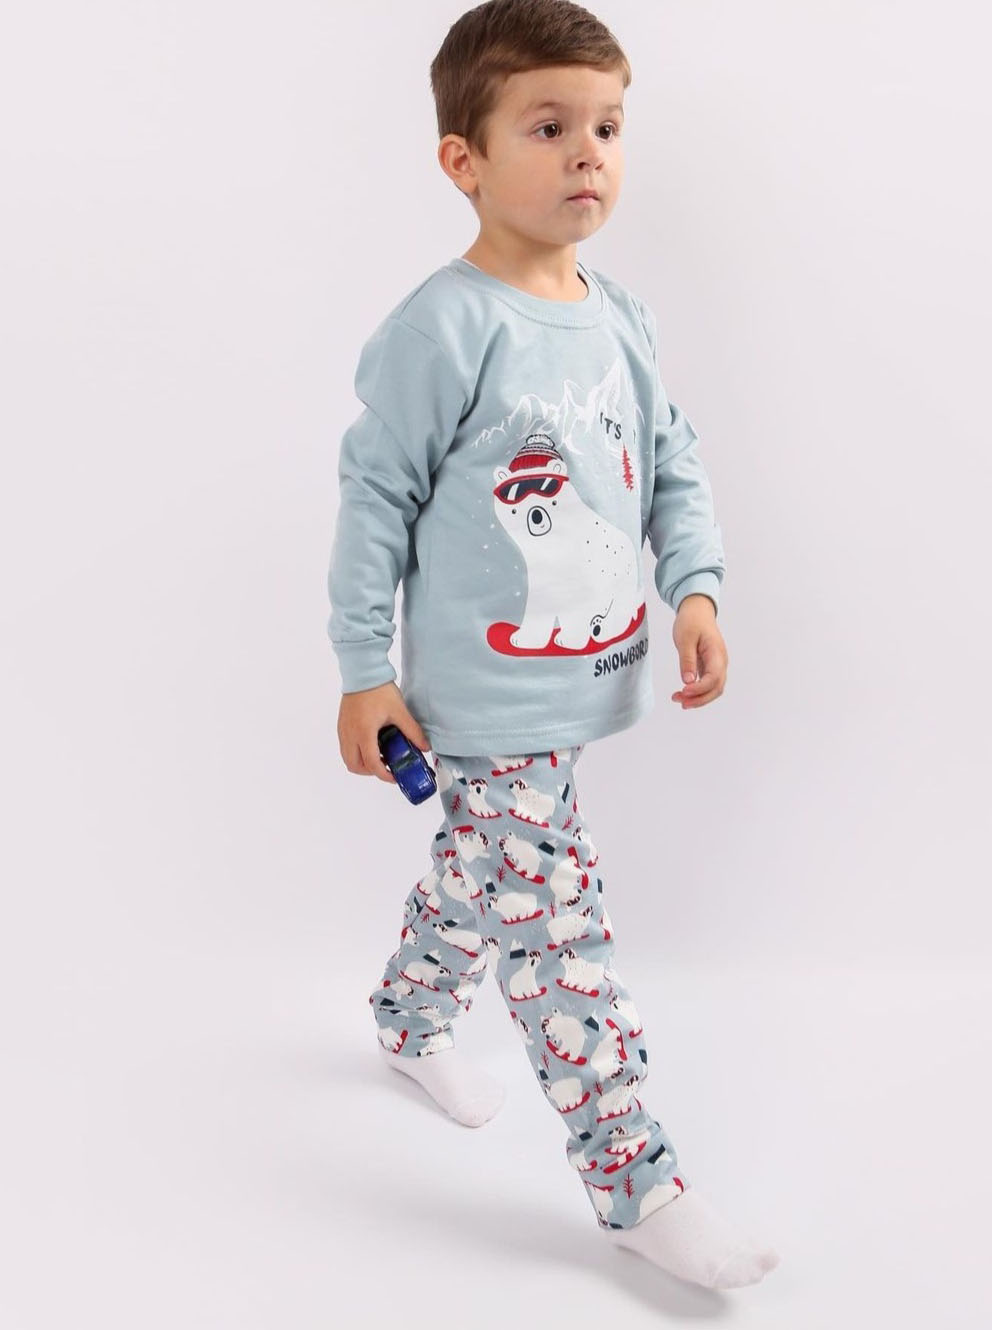 Утеплена піжама для хлопчика Фламінго Ведмедик Snowboard сіра 329-033 - ціна